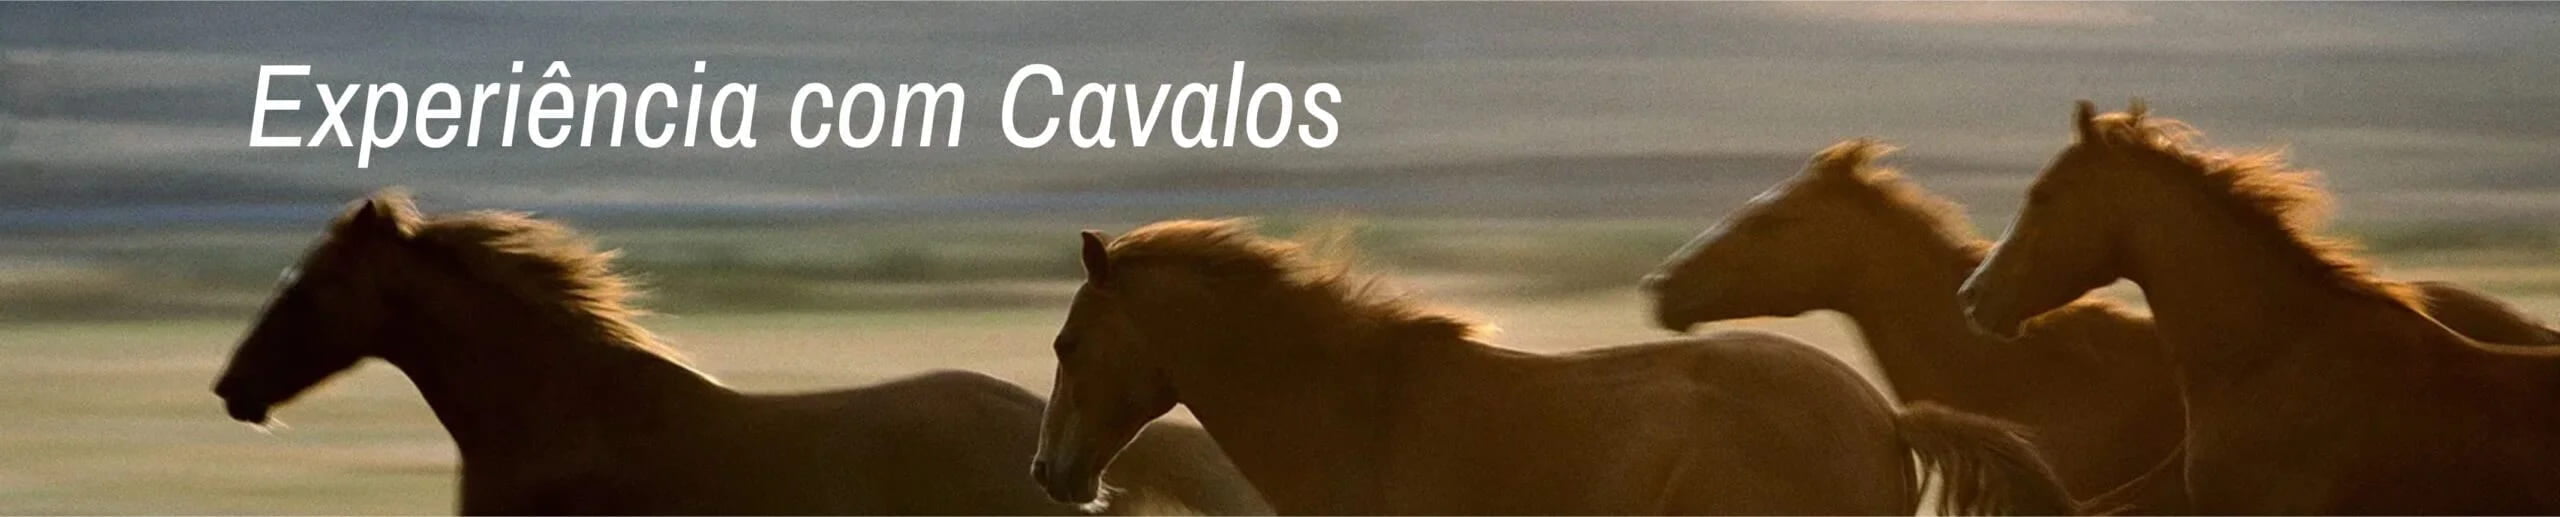 Liderança humanizada: Experiência com Cavalos